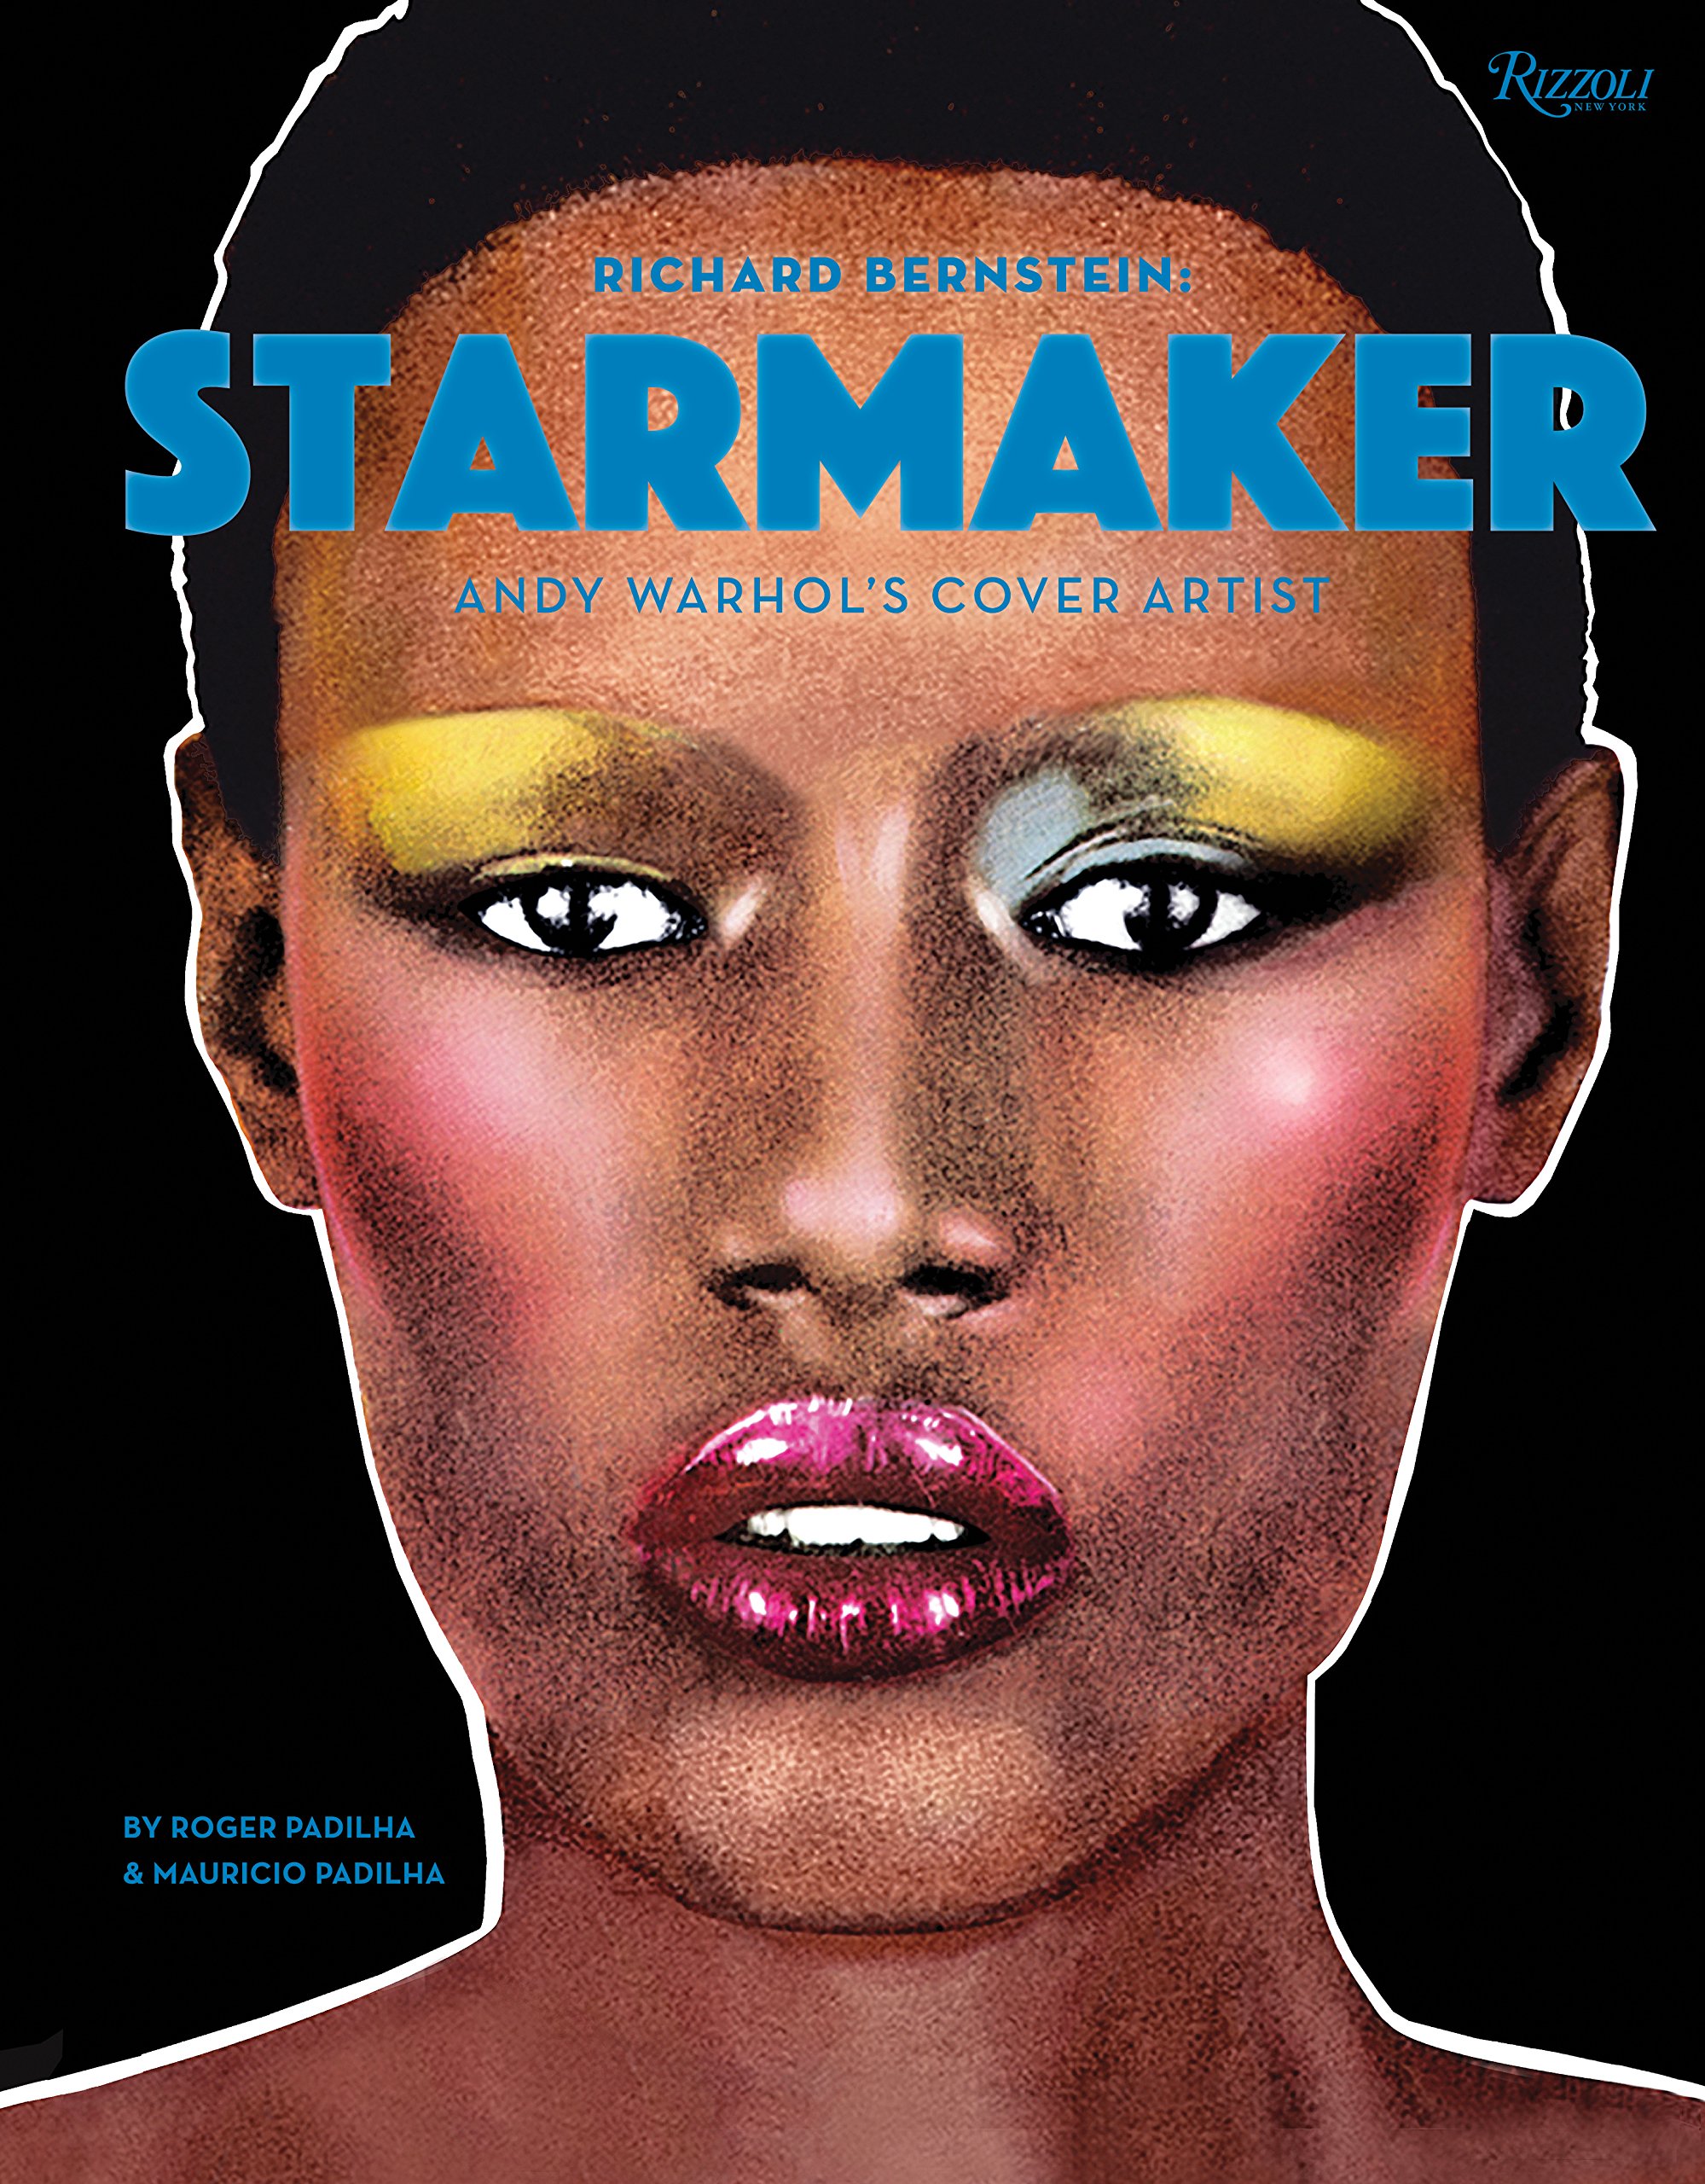 “Starmaker”, el libro que rinde homenaje a Richard Bernstein